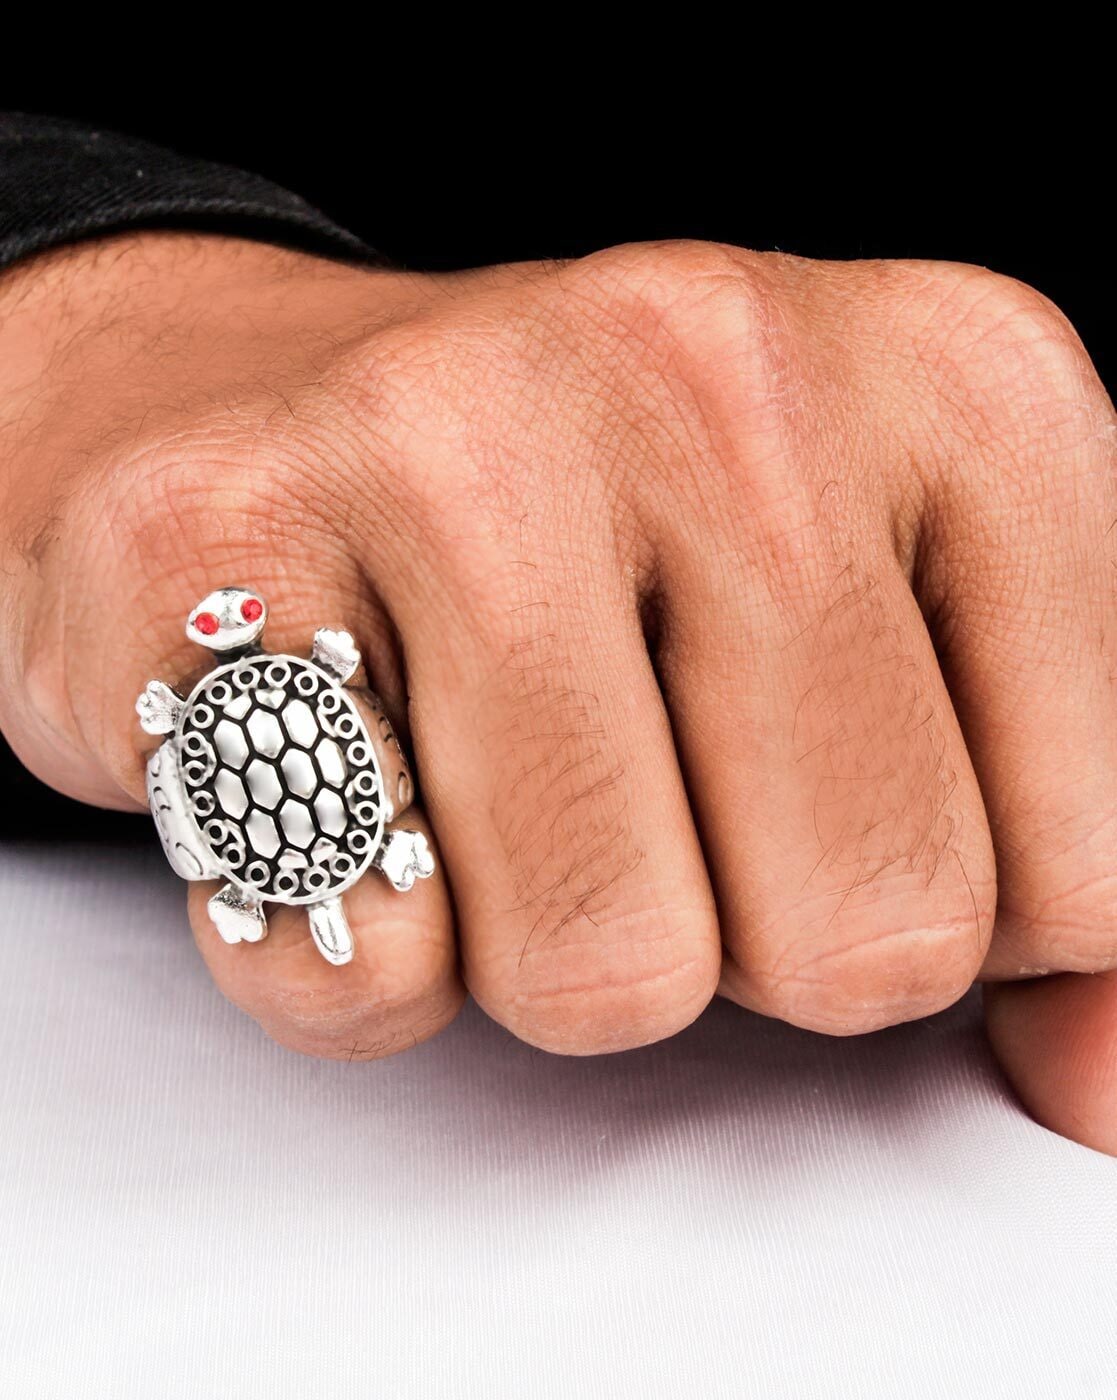 Turtle Ring Tips : इन राशि के लोग भूलकर भी न पहनें कछुए की अंगूठी -  Grehlakshmi